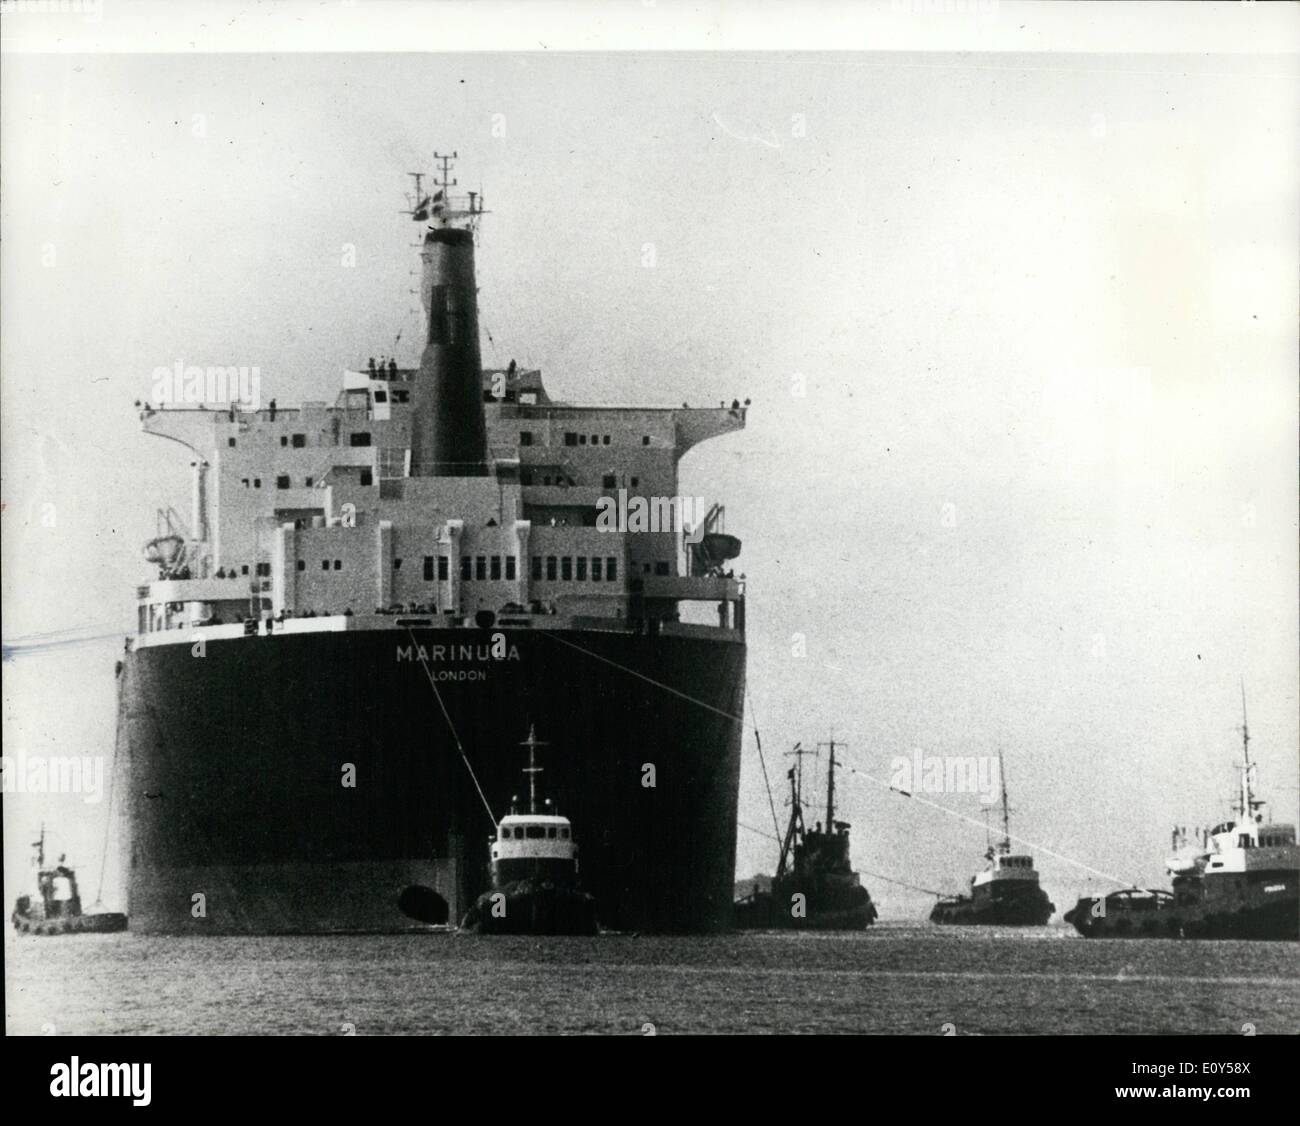 08 août, 1968 - plus grand navire jamais construit en Scandinavie pour être livré à Shell : l'Lindoe Shipbuilding Company à l'île de Fionie, au Danemark, tiendra aujourd'hui (vendredi( livrer le plus grand navire jamais construit en Scandinavie, à Shell. Elle constitue la "arinula' un super tanker de 196 000 tonnes, que l'on voit ici lors d'un test de voile. Banque D'Images